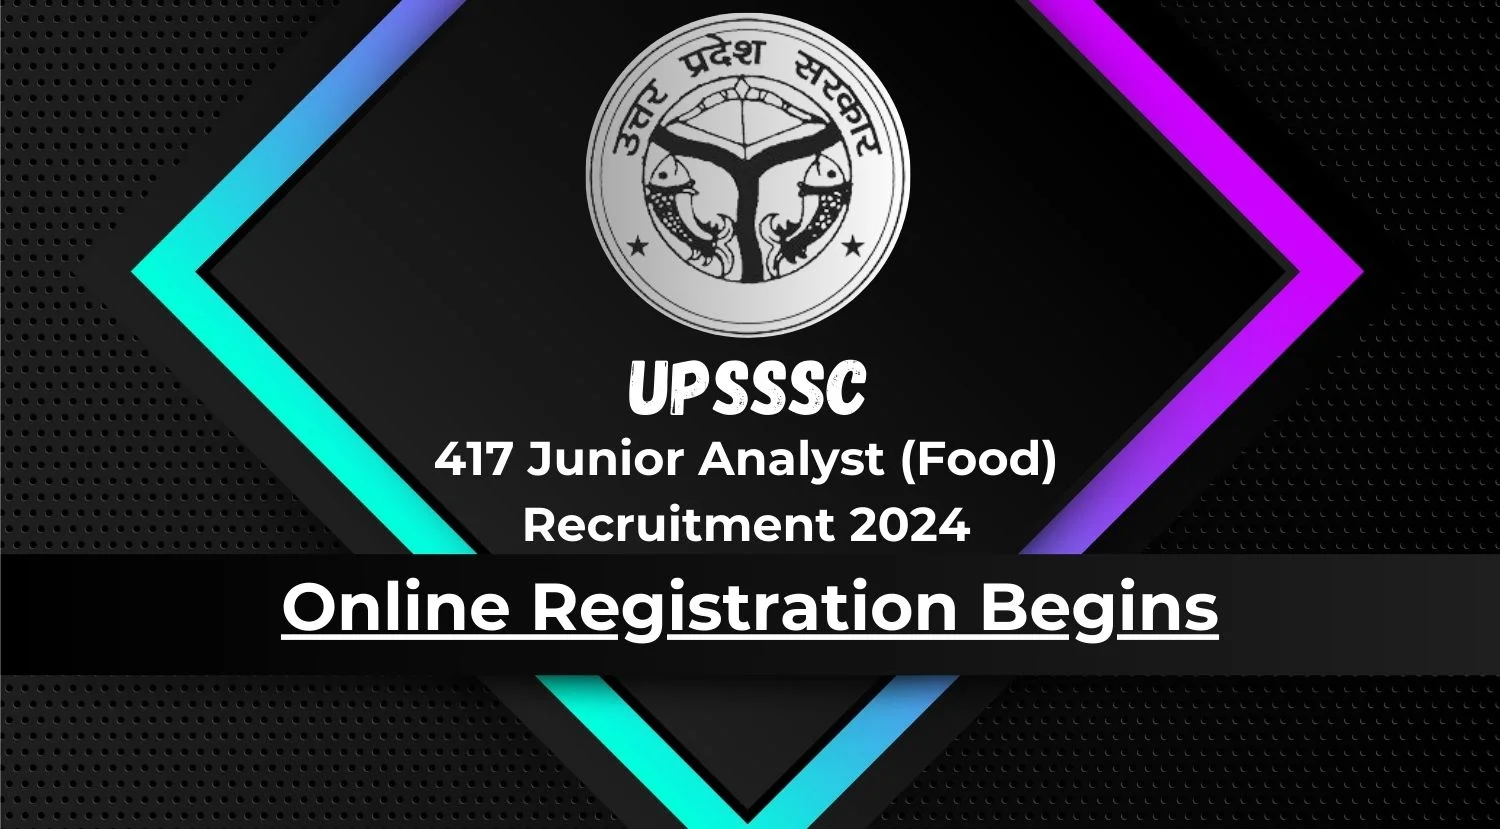 UPSSSC 417 Junior Analyst Food Recruitment 2024 Online Registration Begins